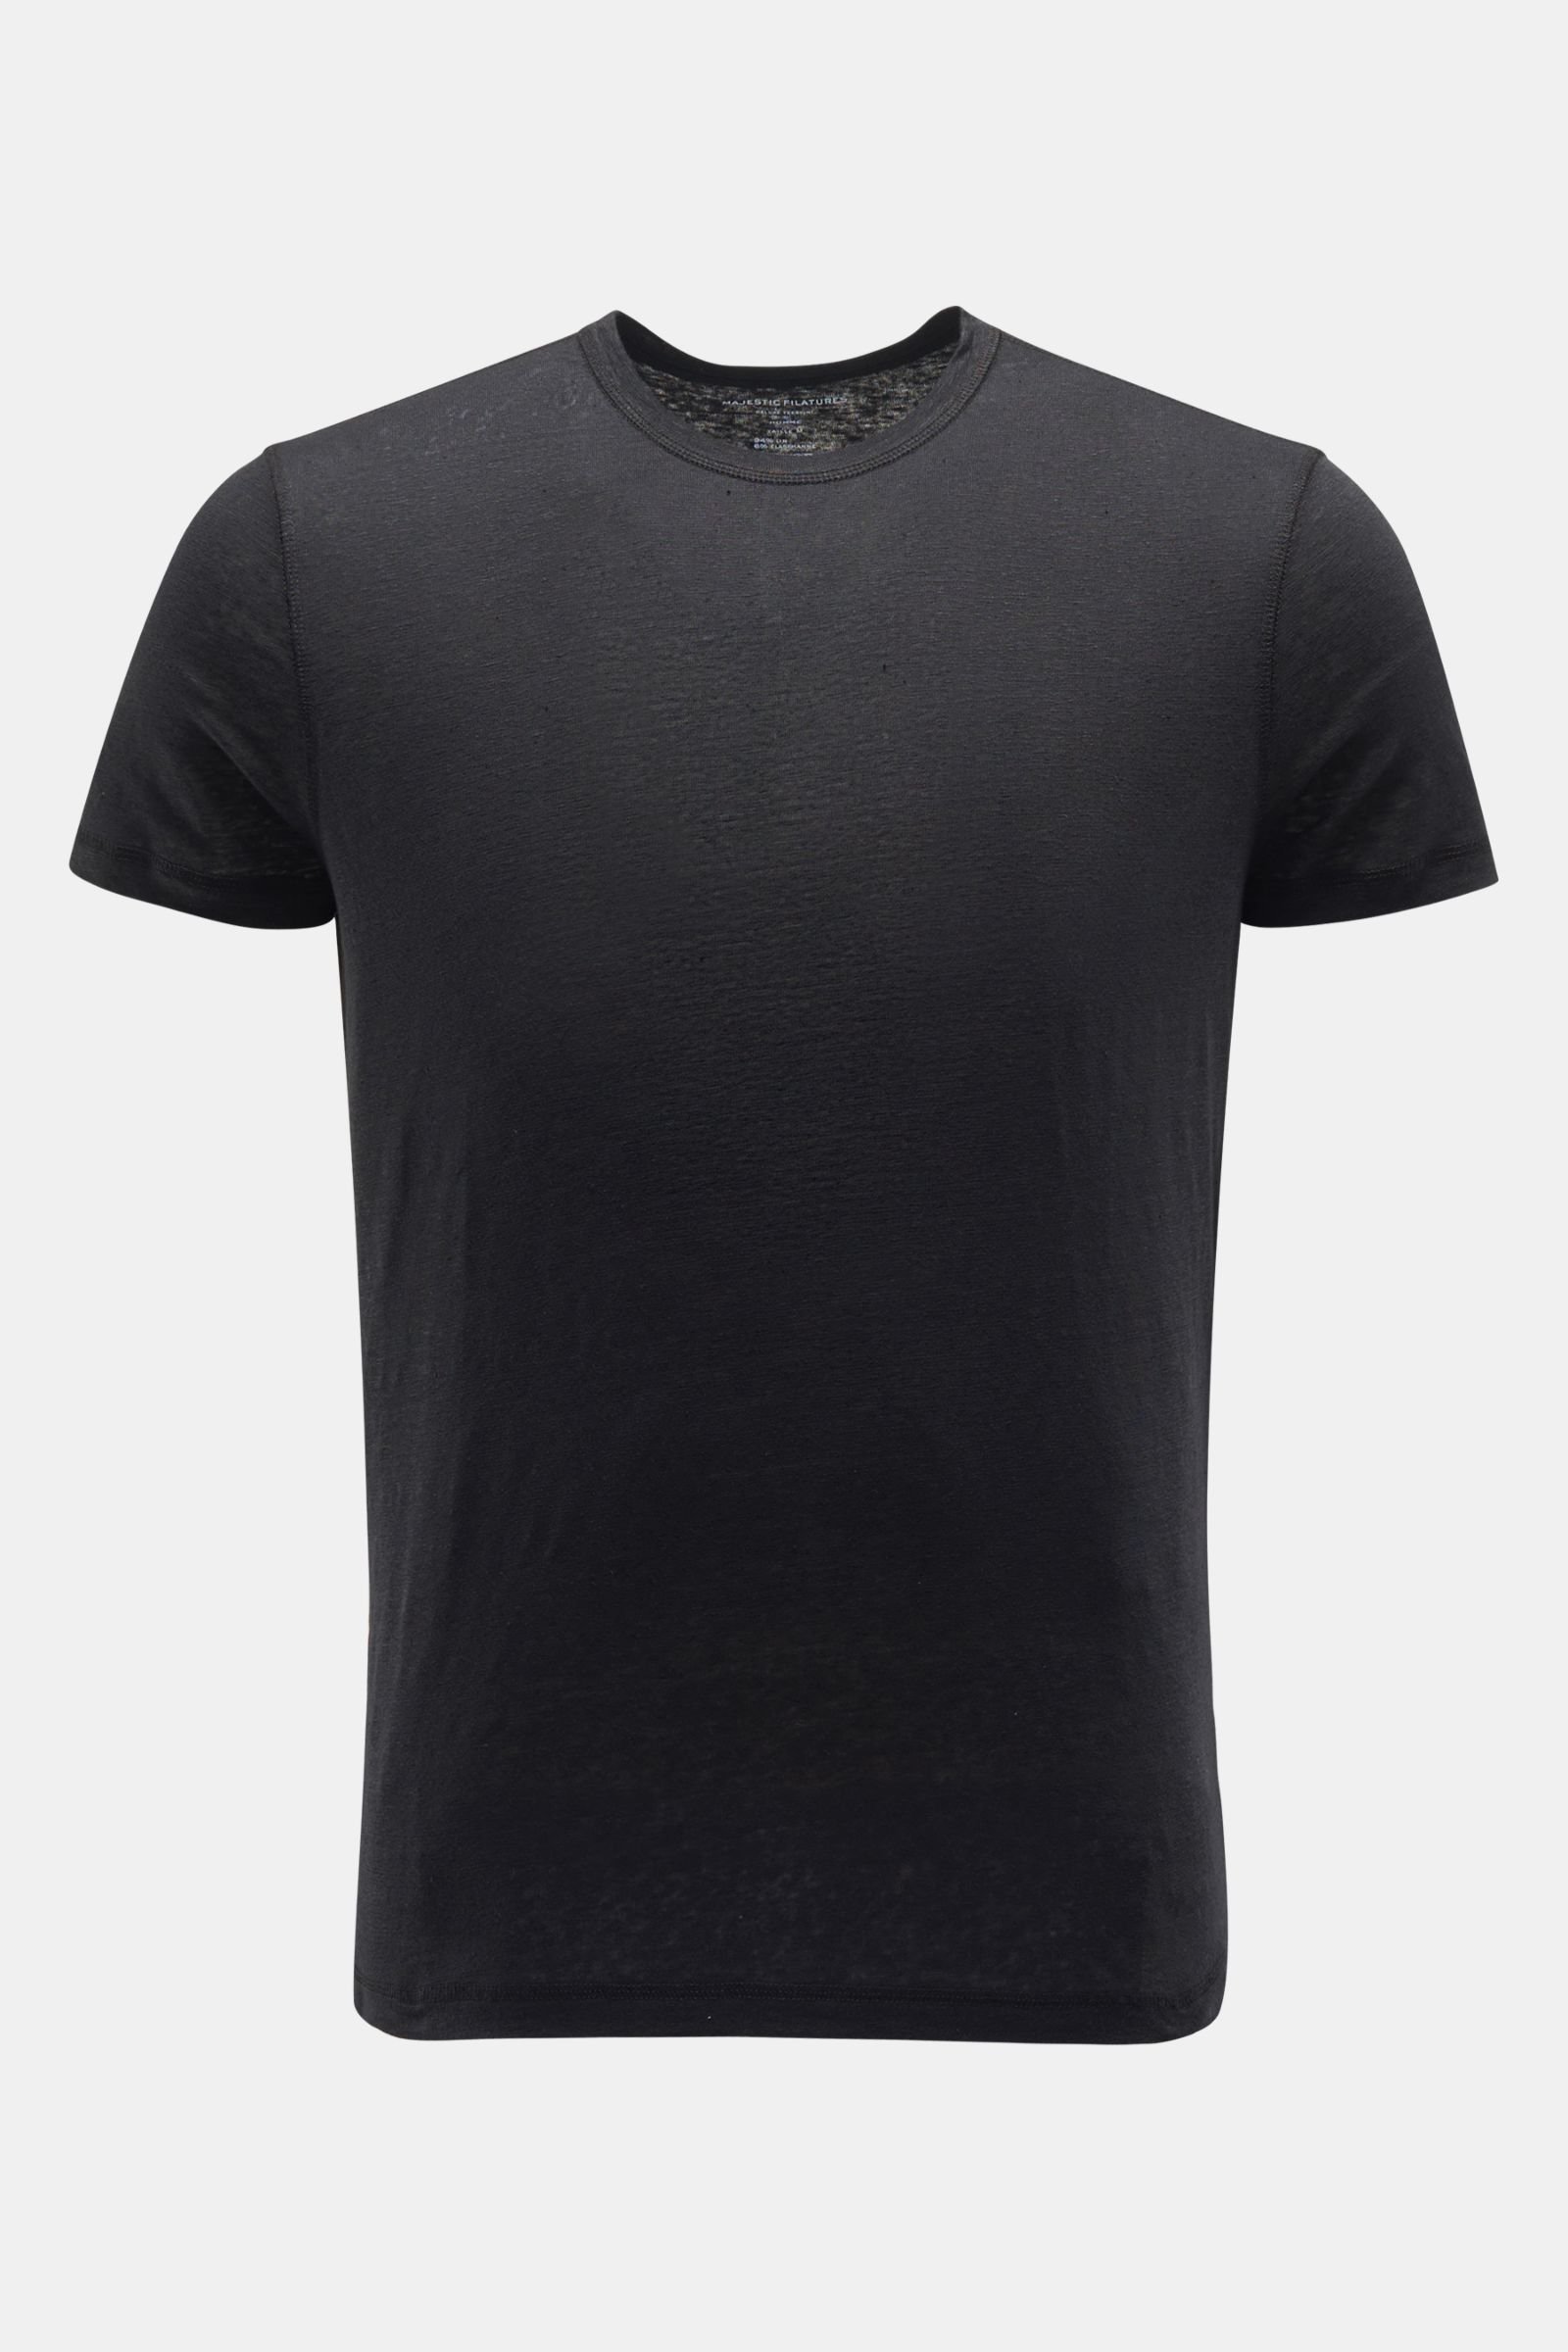 Leinen Rundhals-T-Shirt schwarz